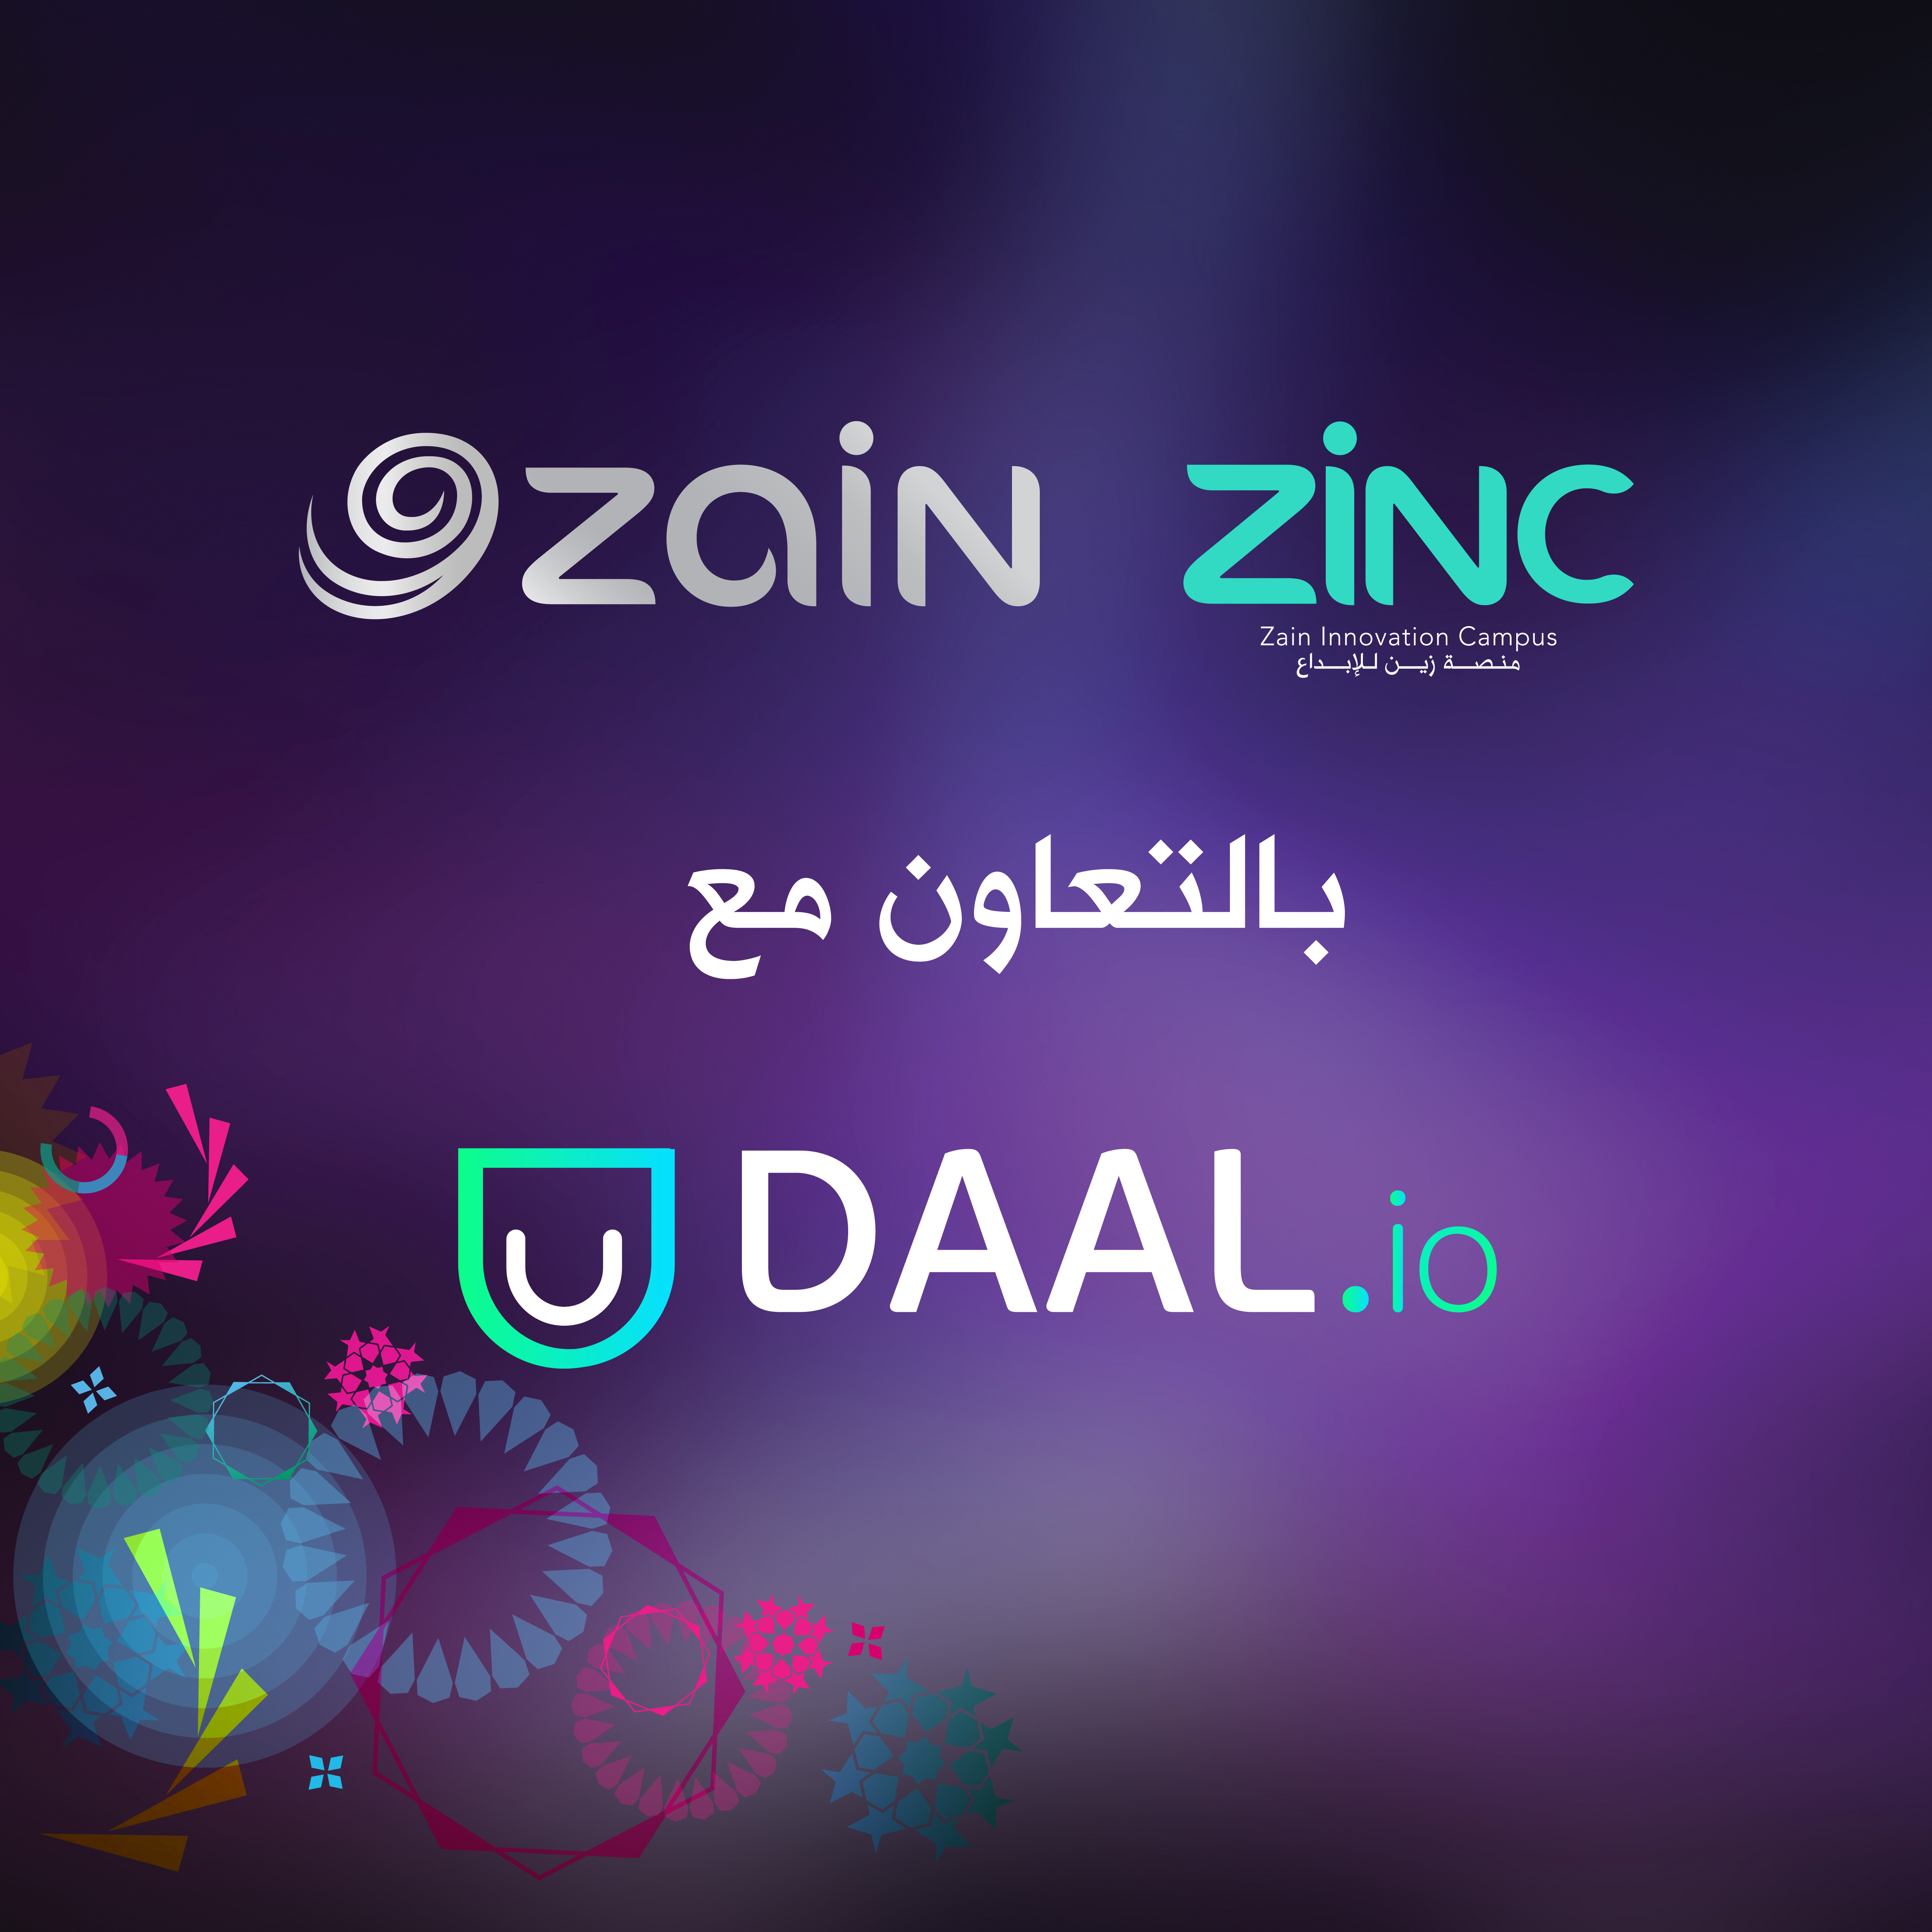 دعماً لرياديي الأعمال في مجال تكنولوجيا المعلومات منصة زين للإبداع (ZINC) تُبرم اتفاقية تعاون مع حاضنة الأعمال العالمية دال